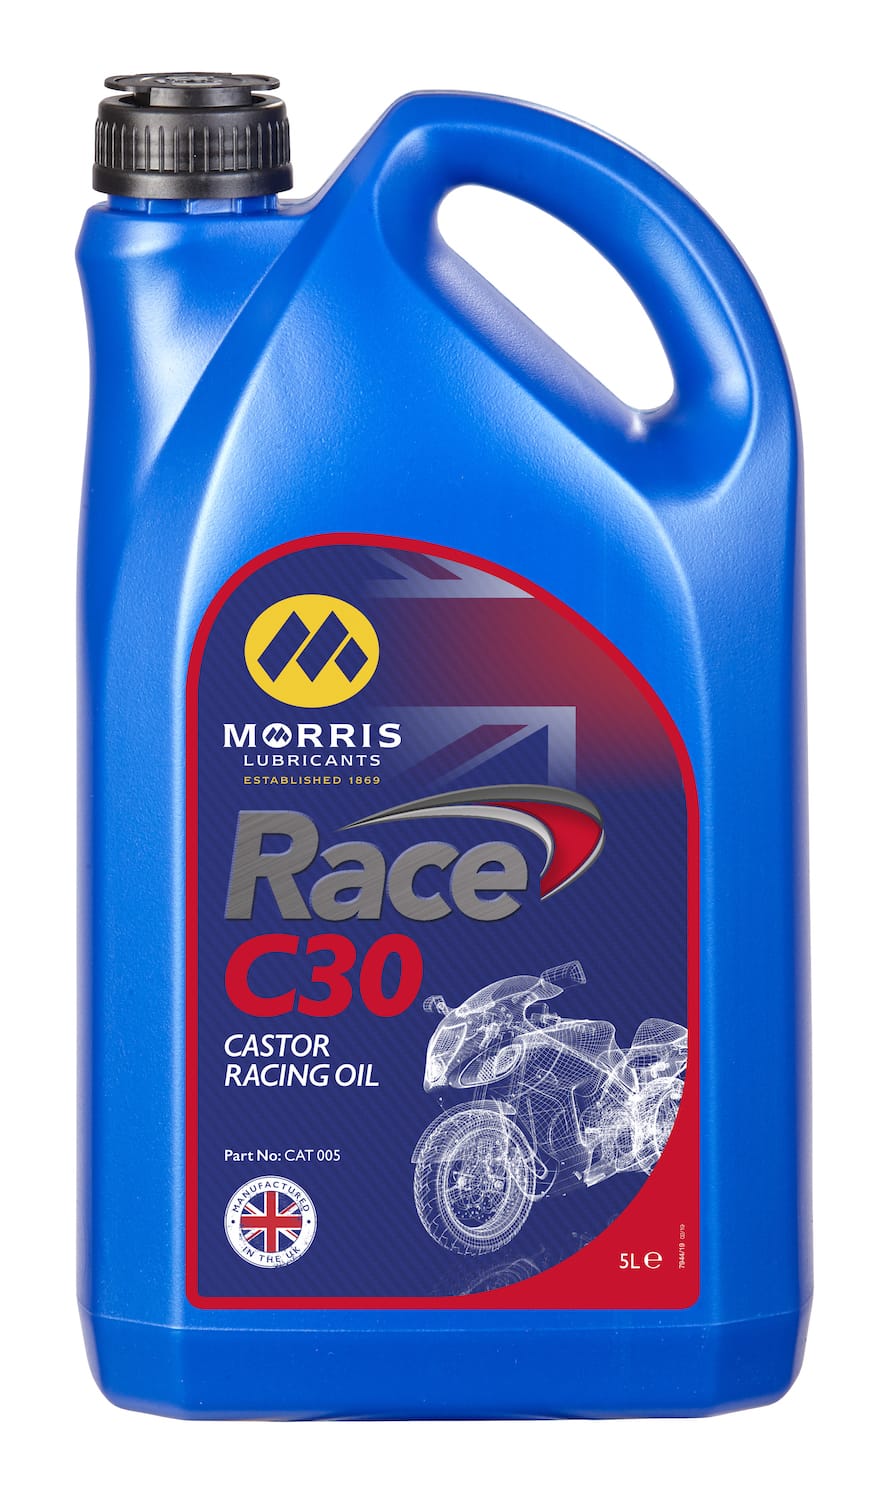 Morris Race C30 (Castor Based Oil)